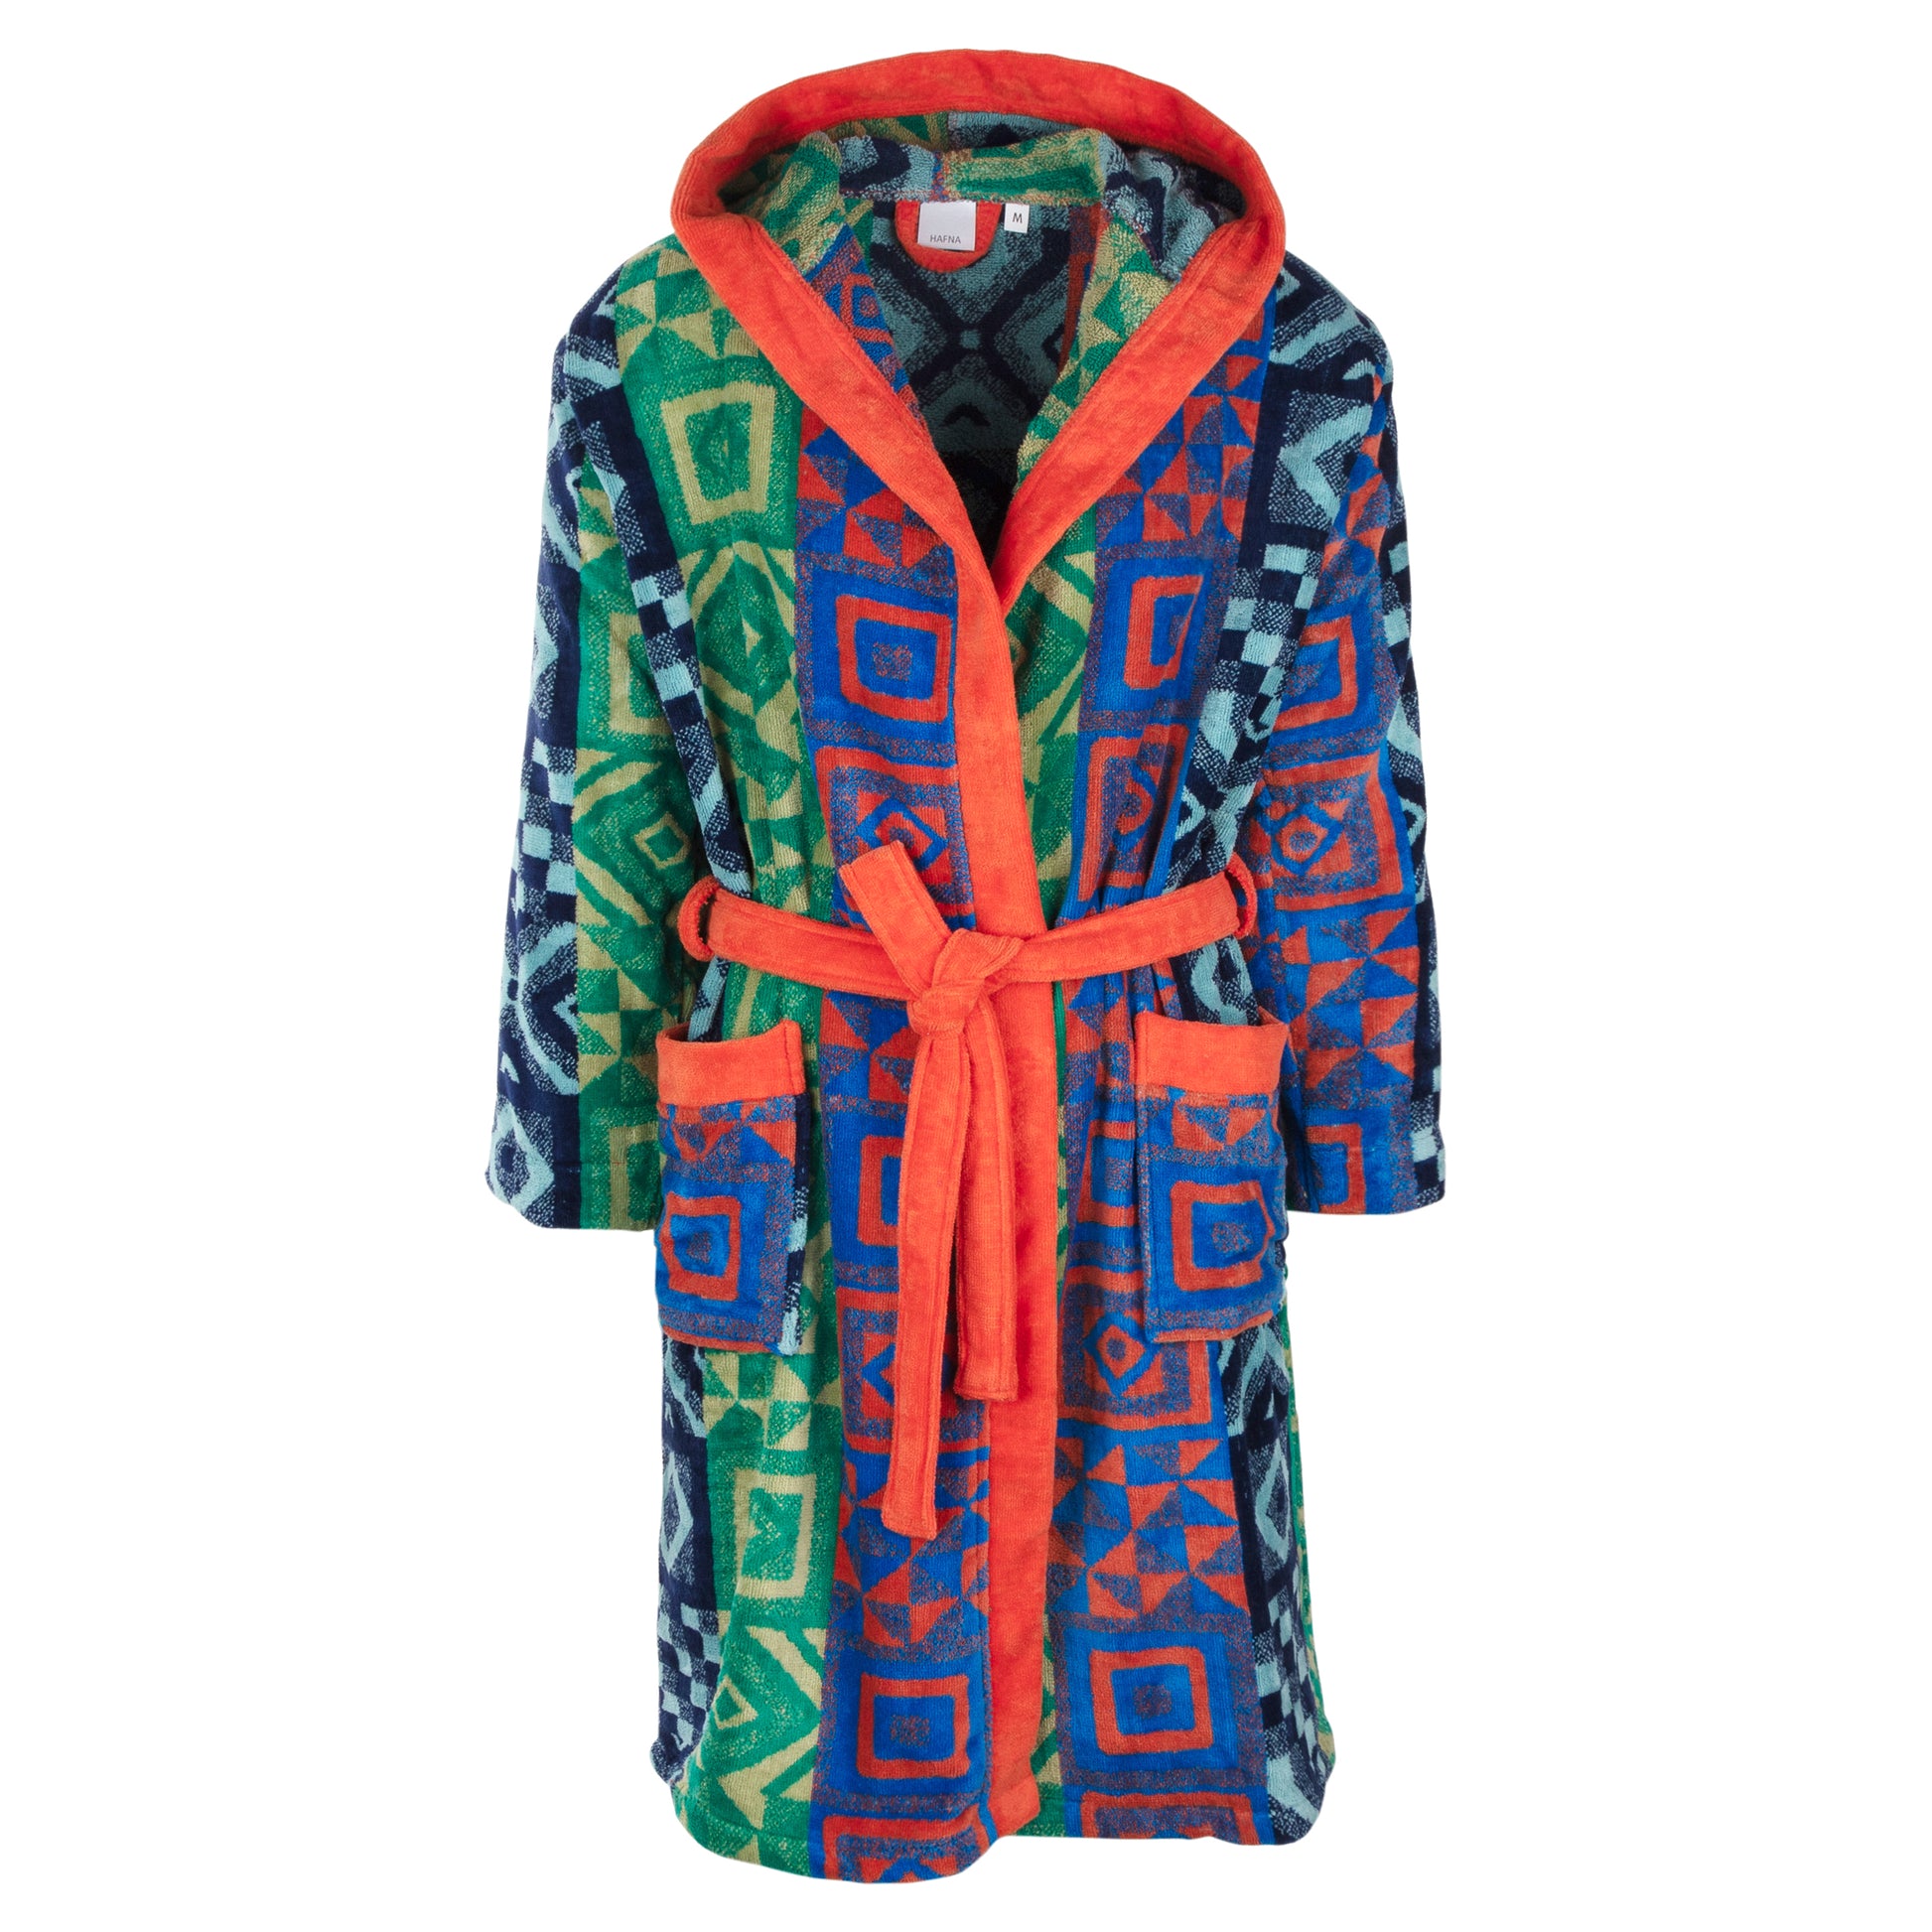 Geometric Printed bathrobe, orange, green, blue